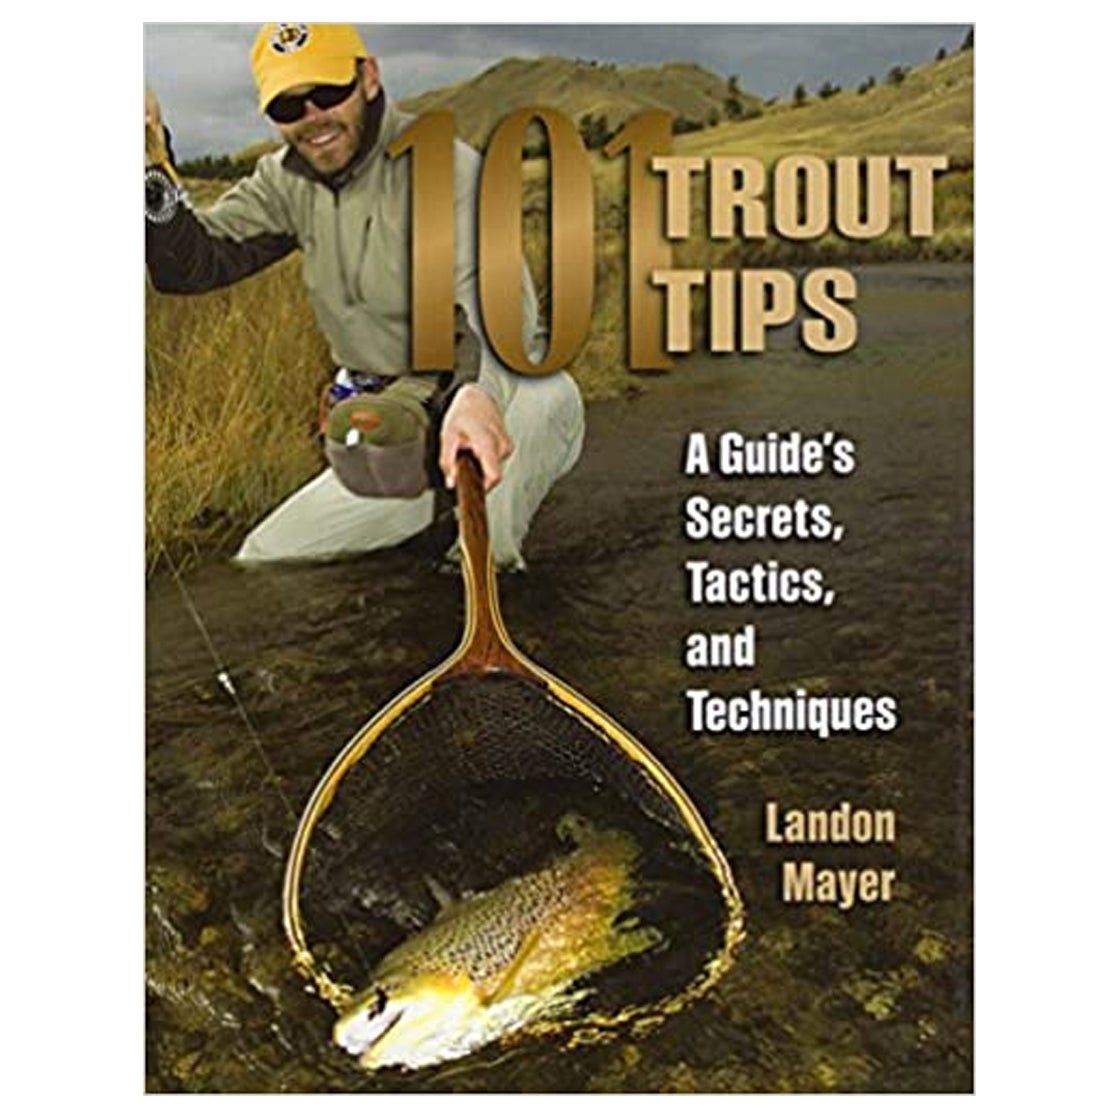 101 Trout Tips: A Guide's Secrets, Tactics, and Techniques - Landon Mayer